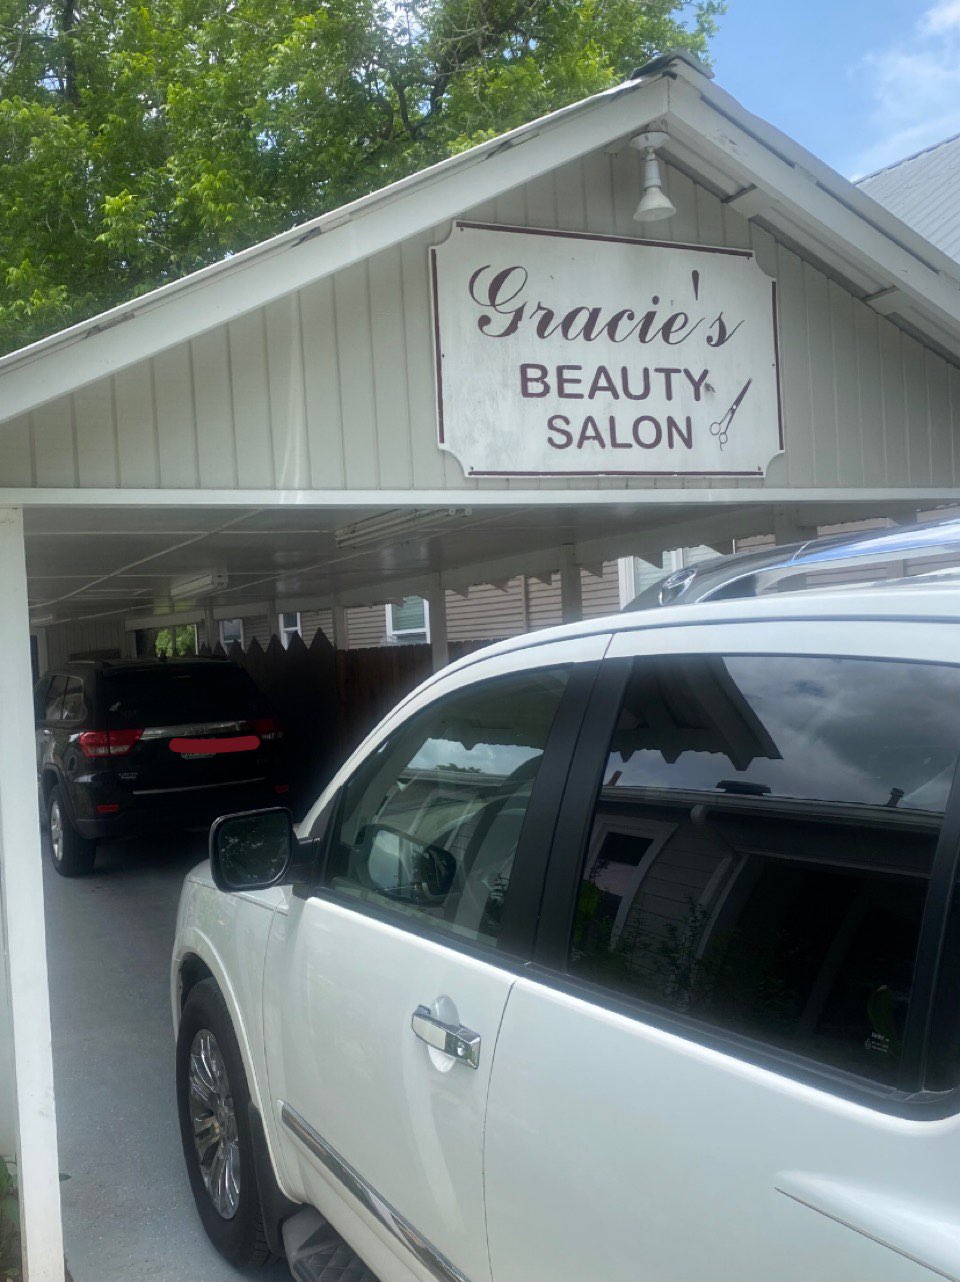 Gracie's Beauty Salon 615 San Antonio St, Pleasanton Texas 78064